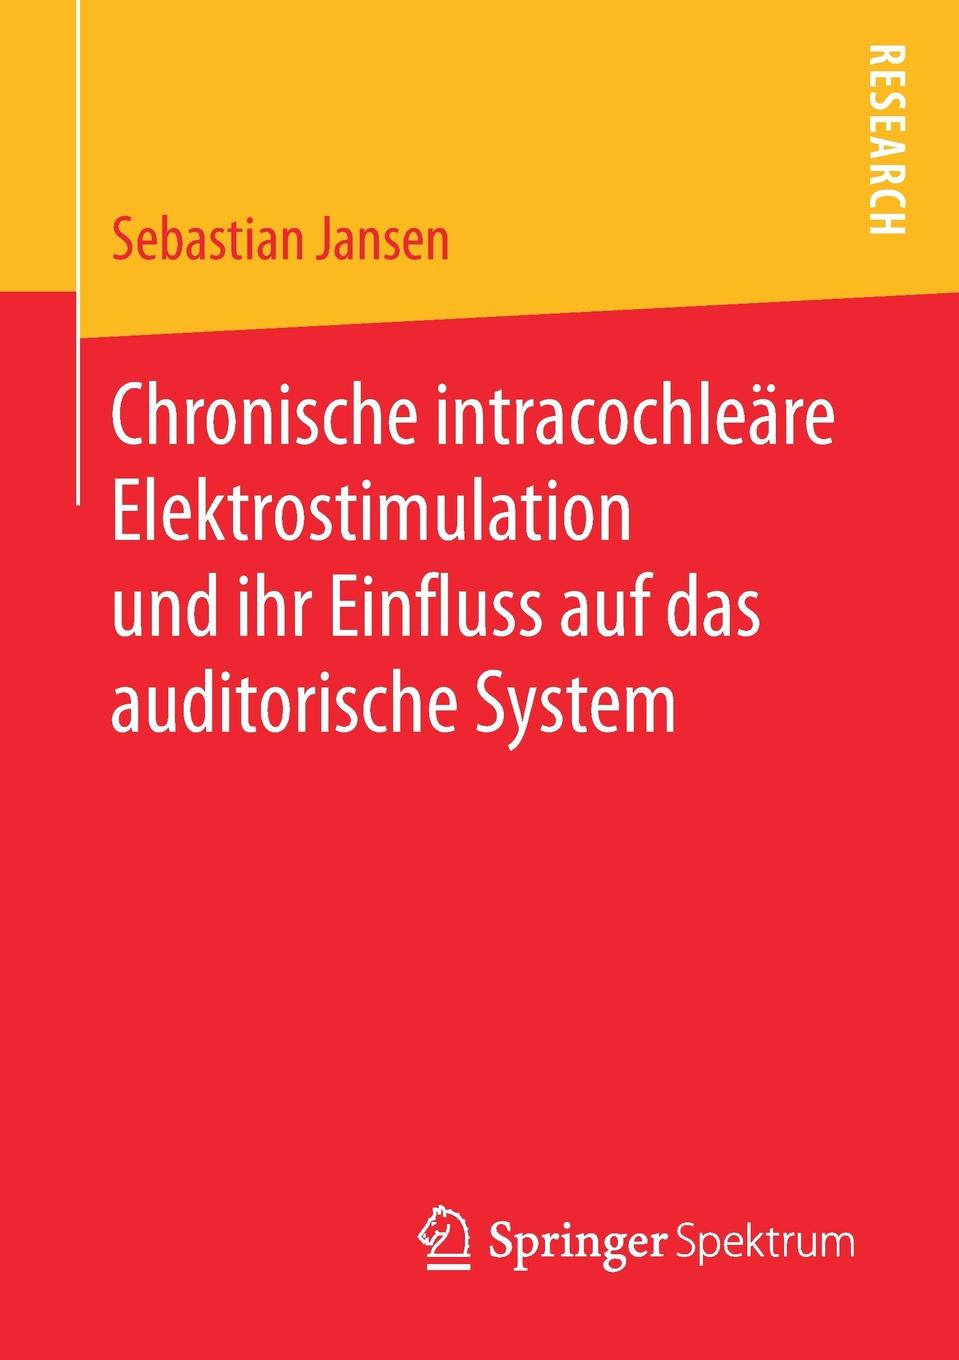 Chronische intracochleare Elektrostimulation und ihr Einfluss auf das auditorische System